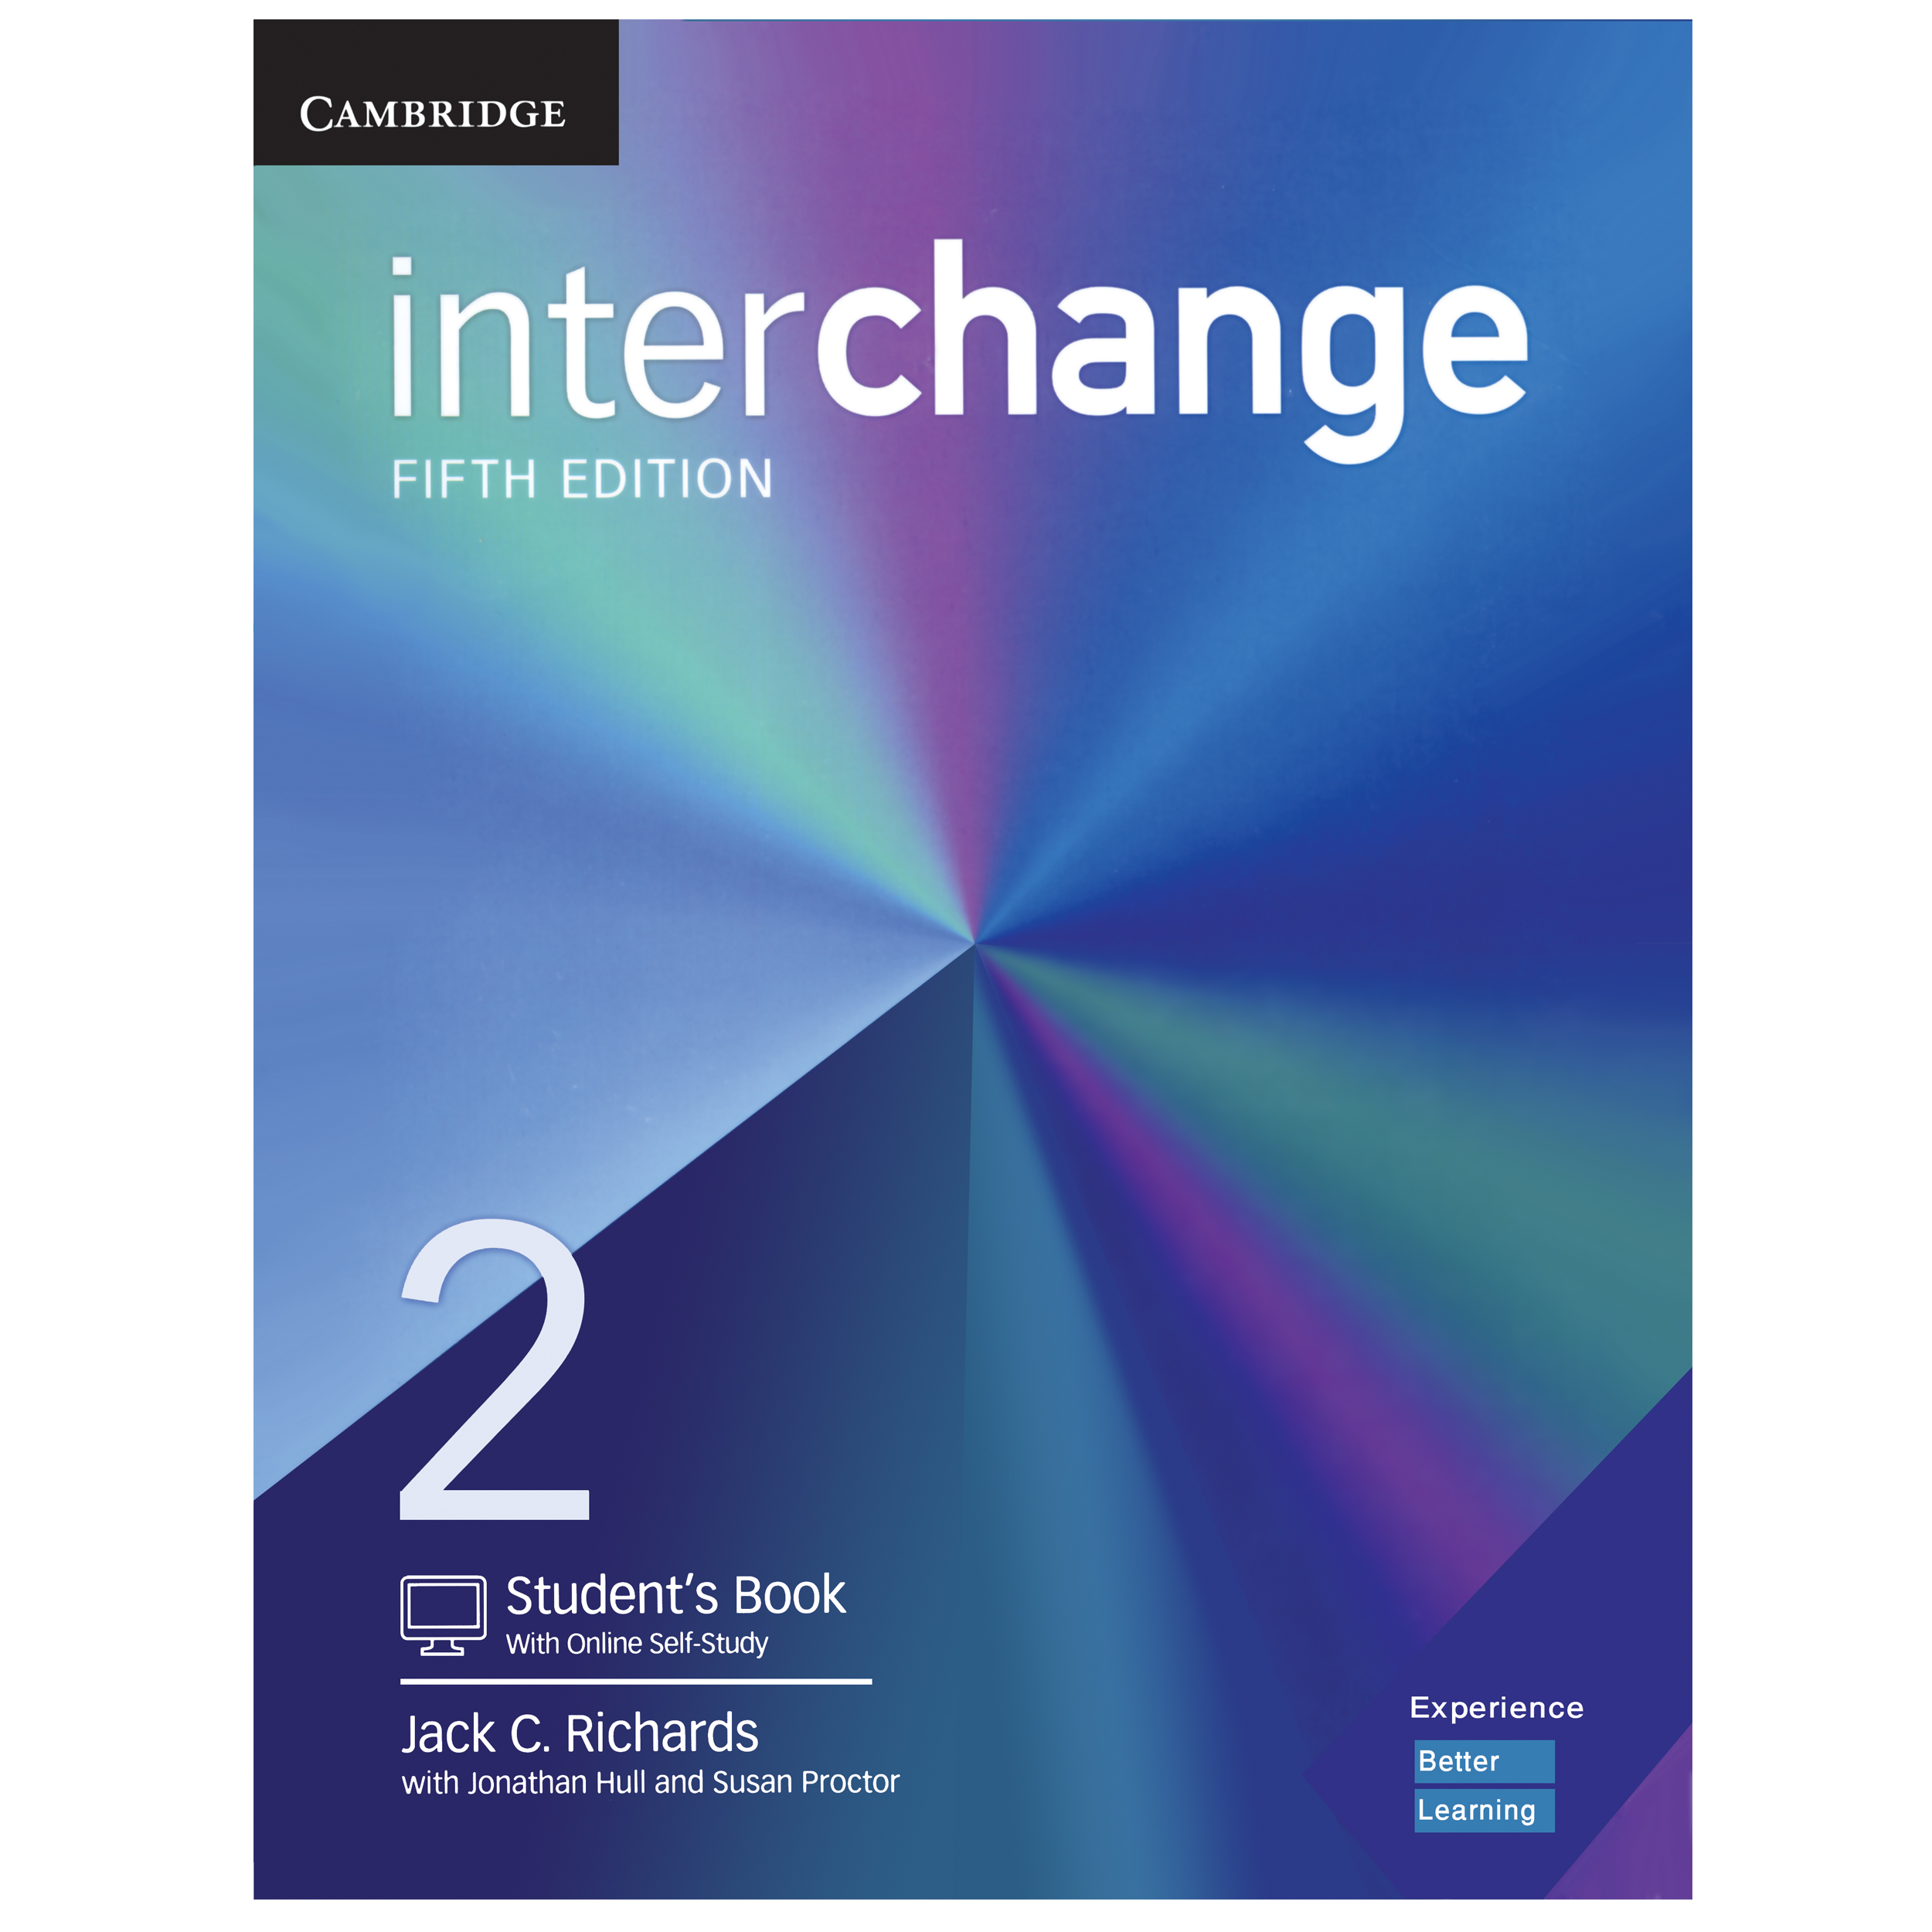 کتاب Interchange 2 Fifth Edition اثر Jack C. Richards انتشارات هدف نوین